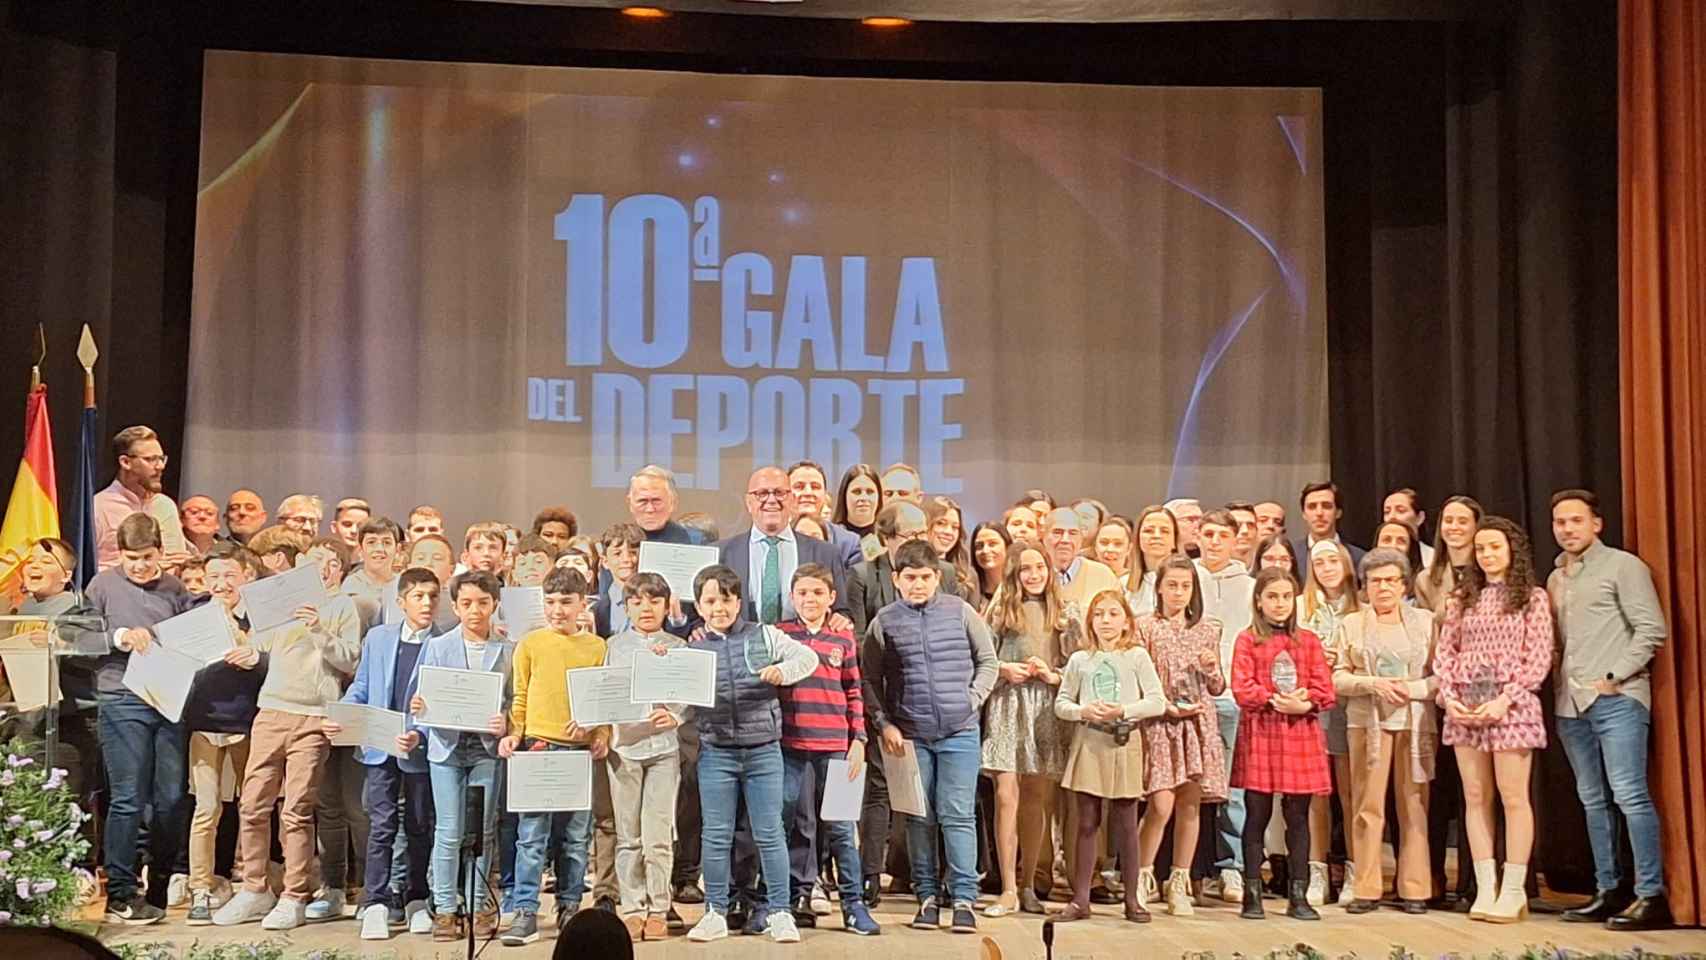 La localidad toledana de Mora celebra su décima gala del deporte